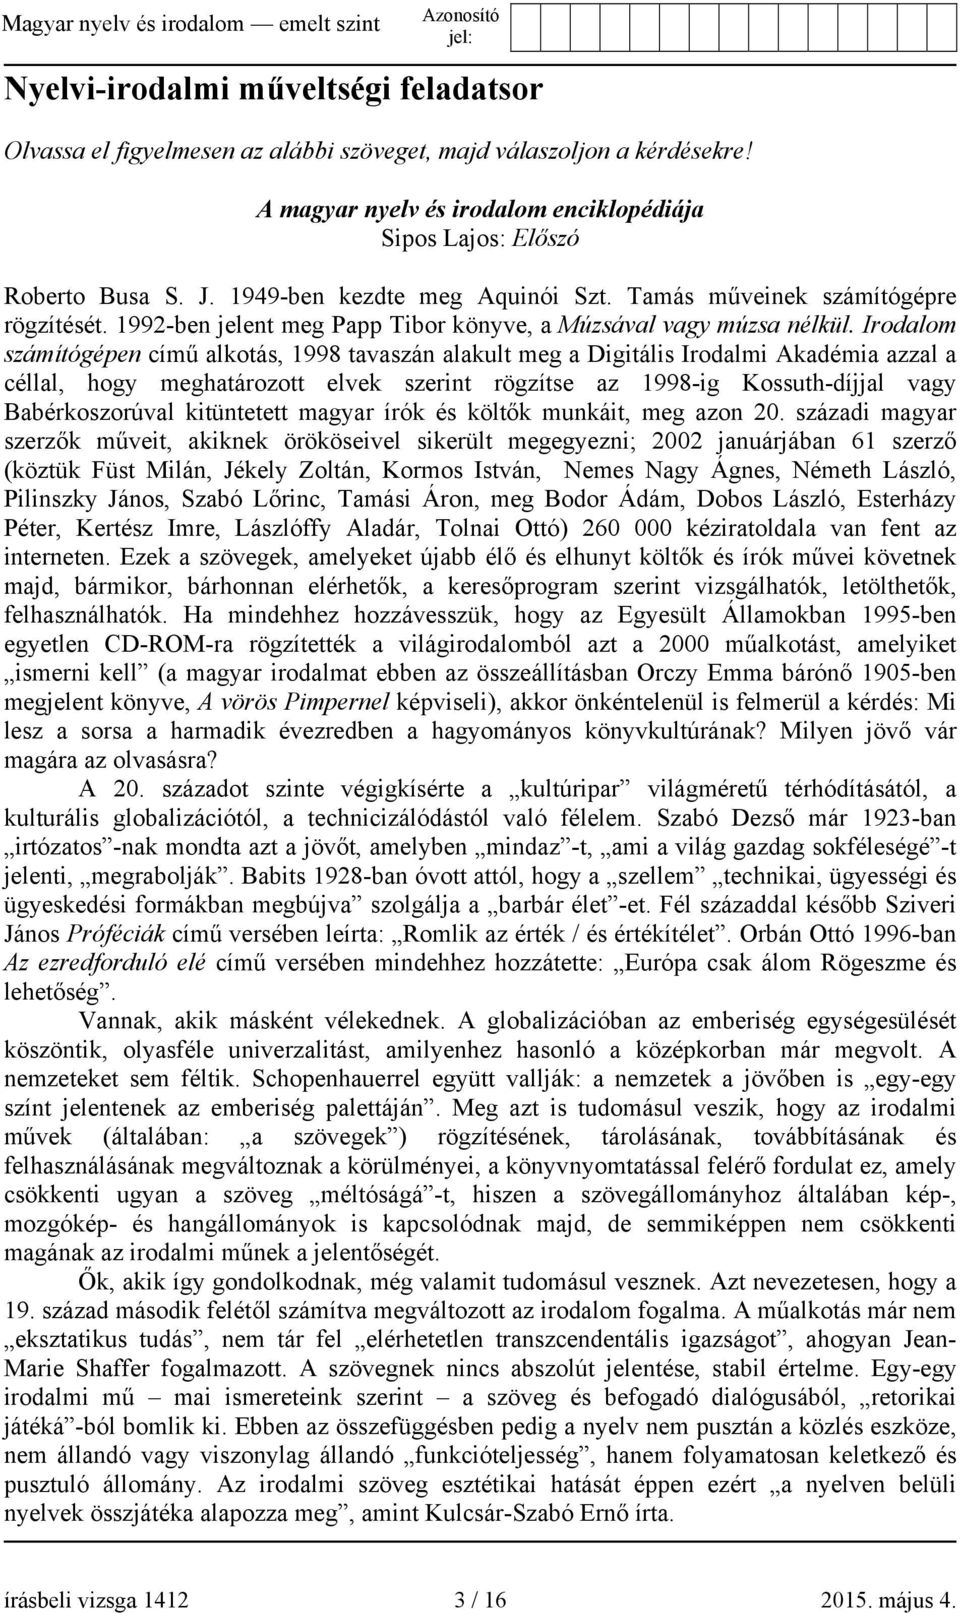 Irodalom számítógépen című alkotás, 1998 tavaszán alakult meg a Digitális Irodalmi Akadémia azzal a céllal, hogy meghatározott elvek szerint rögzítse az 1998-ig Kossuth-díjjal vagy Babérkoszorúval